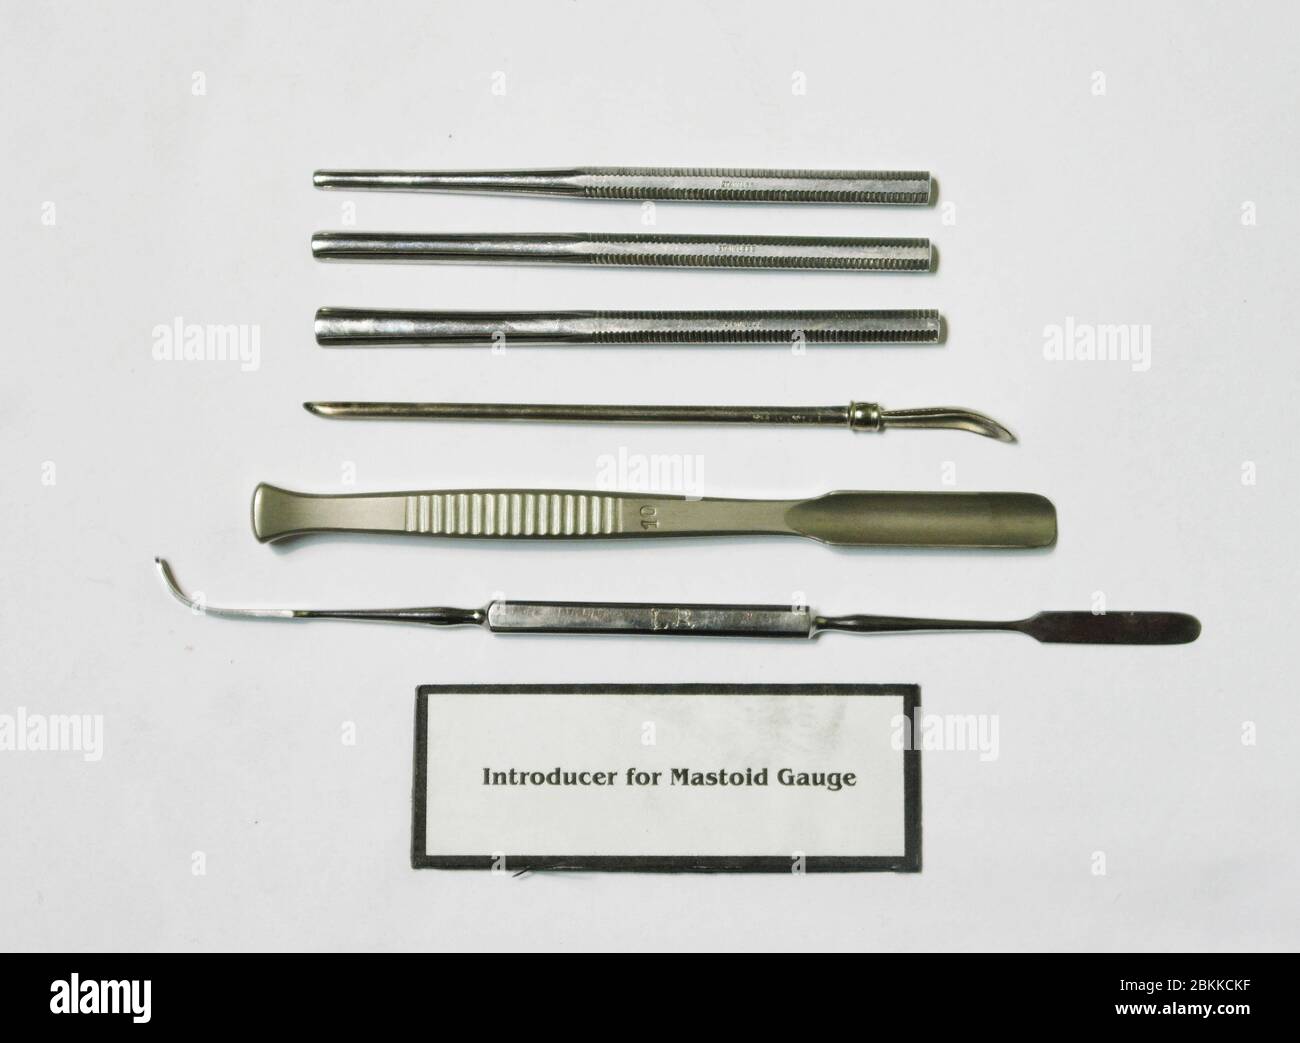 Ein Set von medizinischen Werkzeugen, ein Einführgerät für Mastoid Gouge. Stockfoto